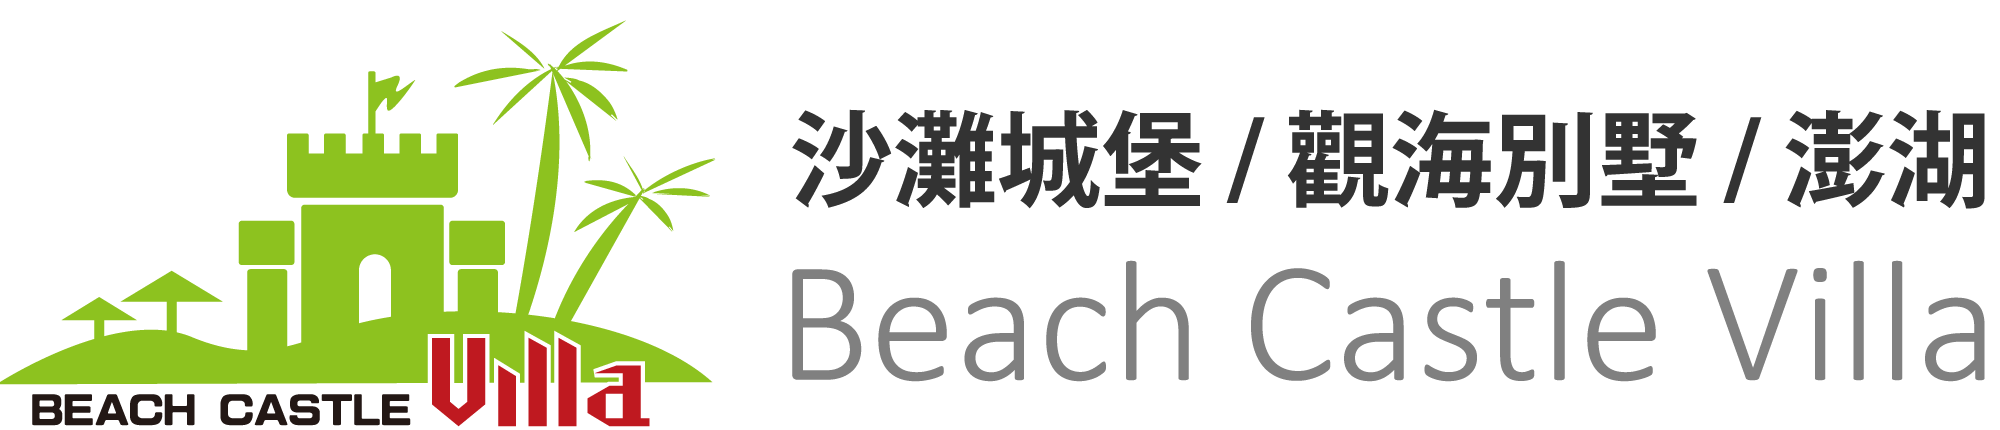 澎湖民宿沙灘城堡Logo